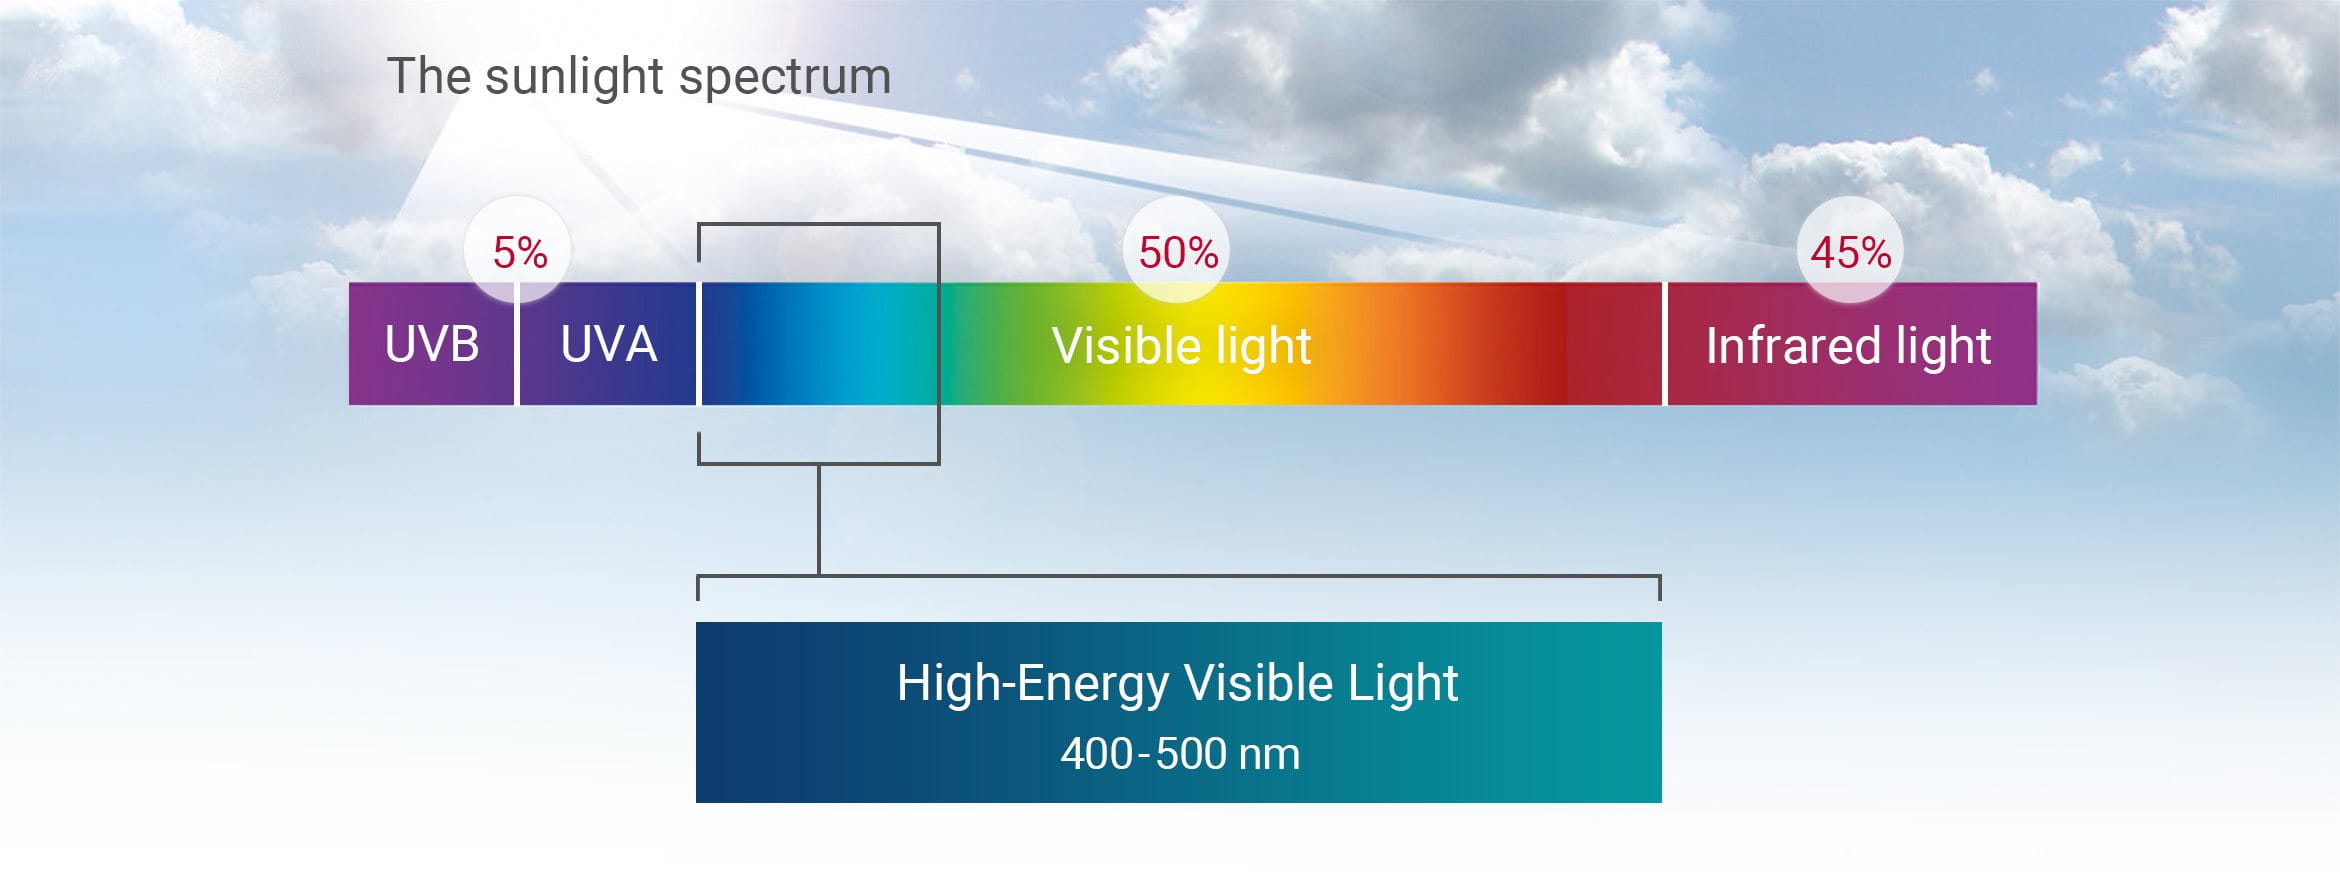 The sunlight spectrum